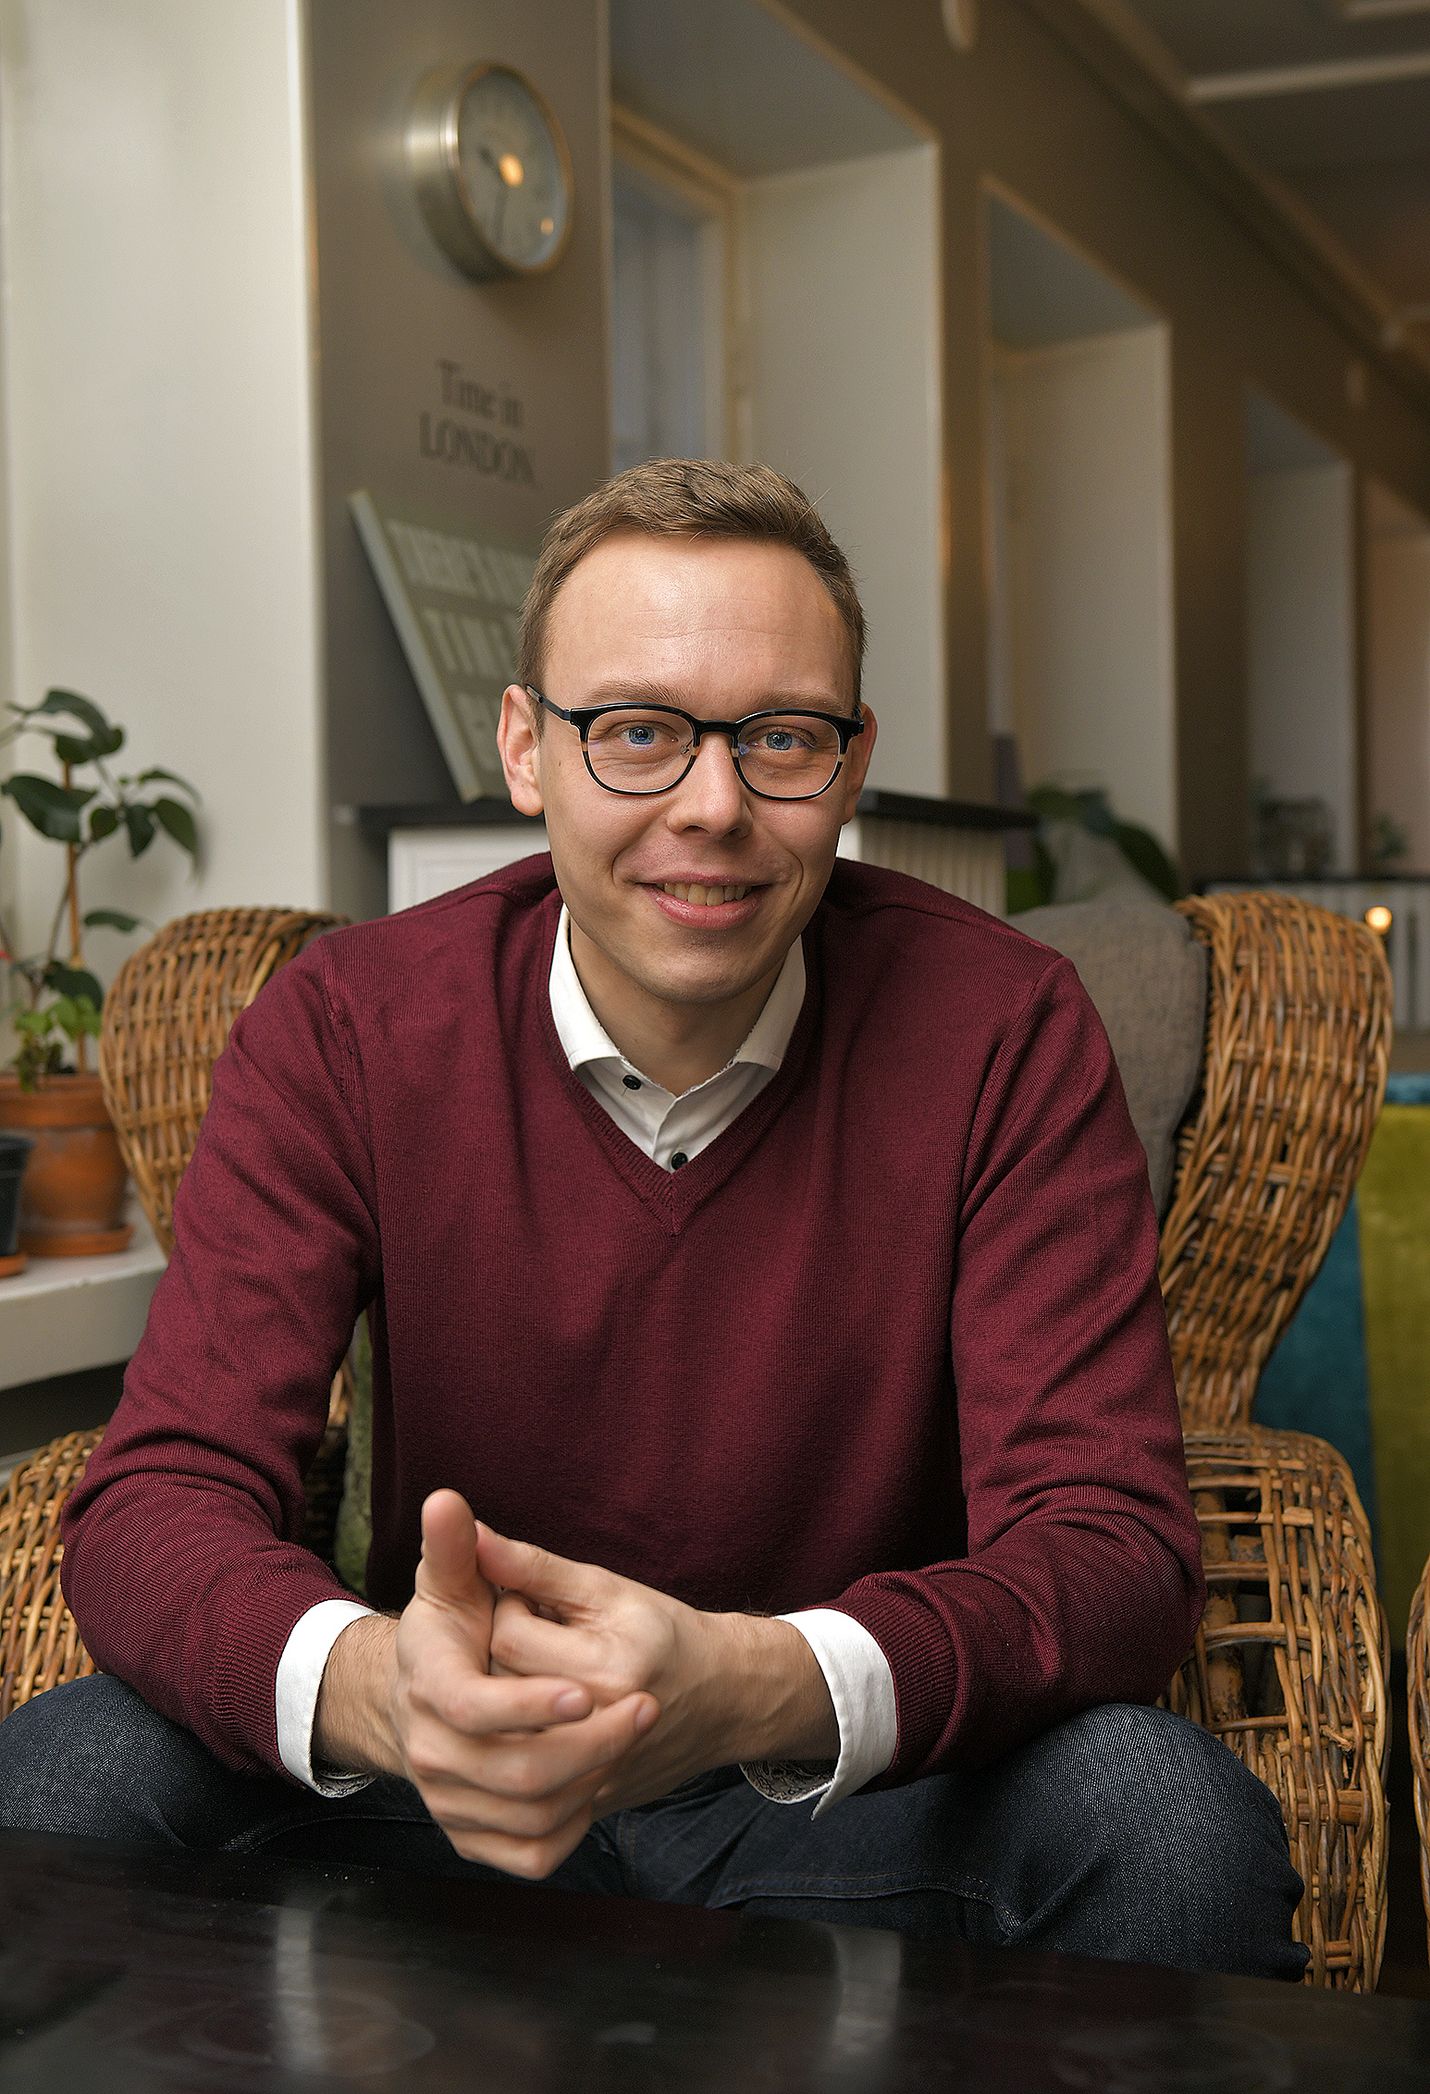 Raumalainen kansanedustaja Matias Marttinen veti työryhmää, joka valmisteli kokoomuksen talousohjelmaa.